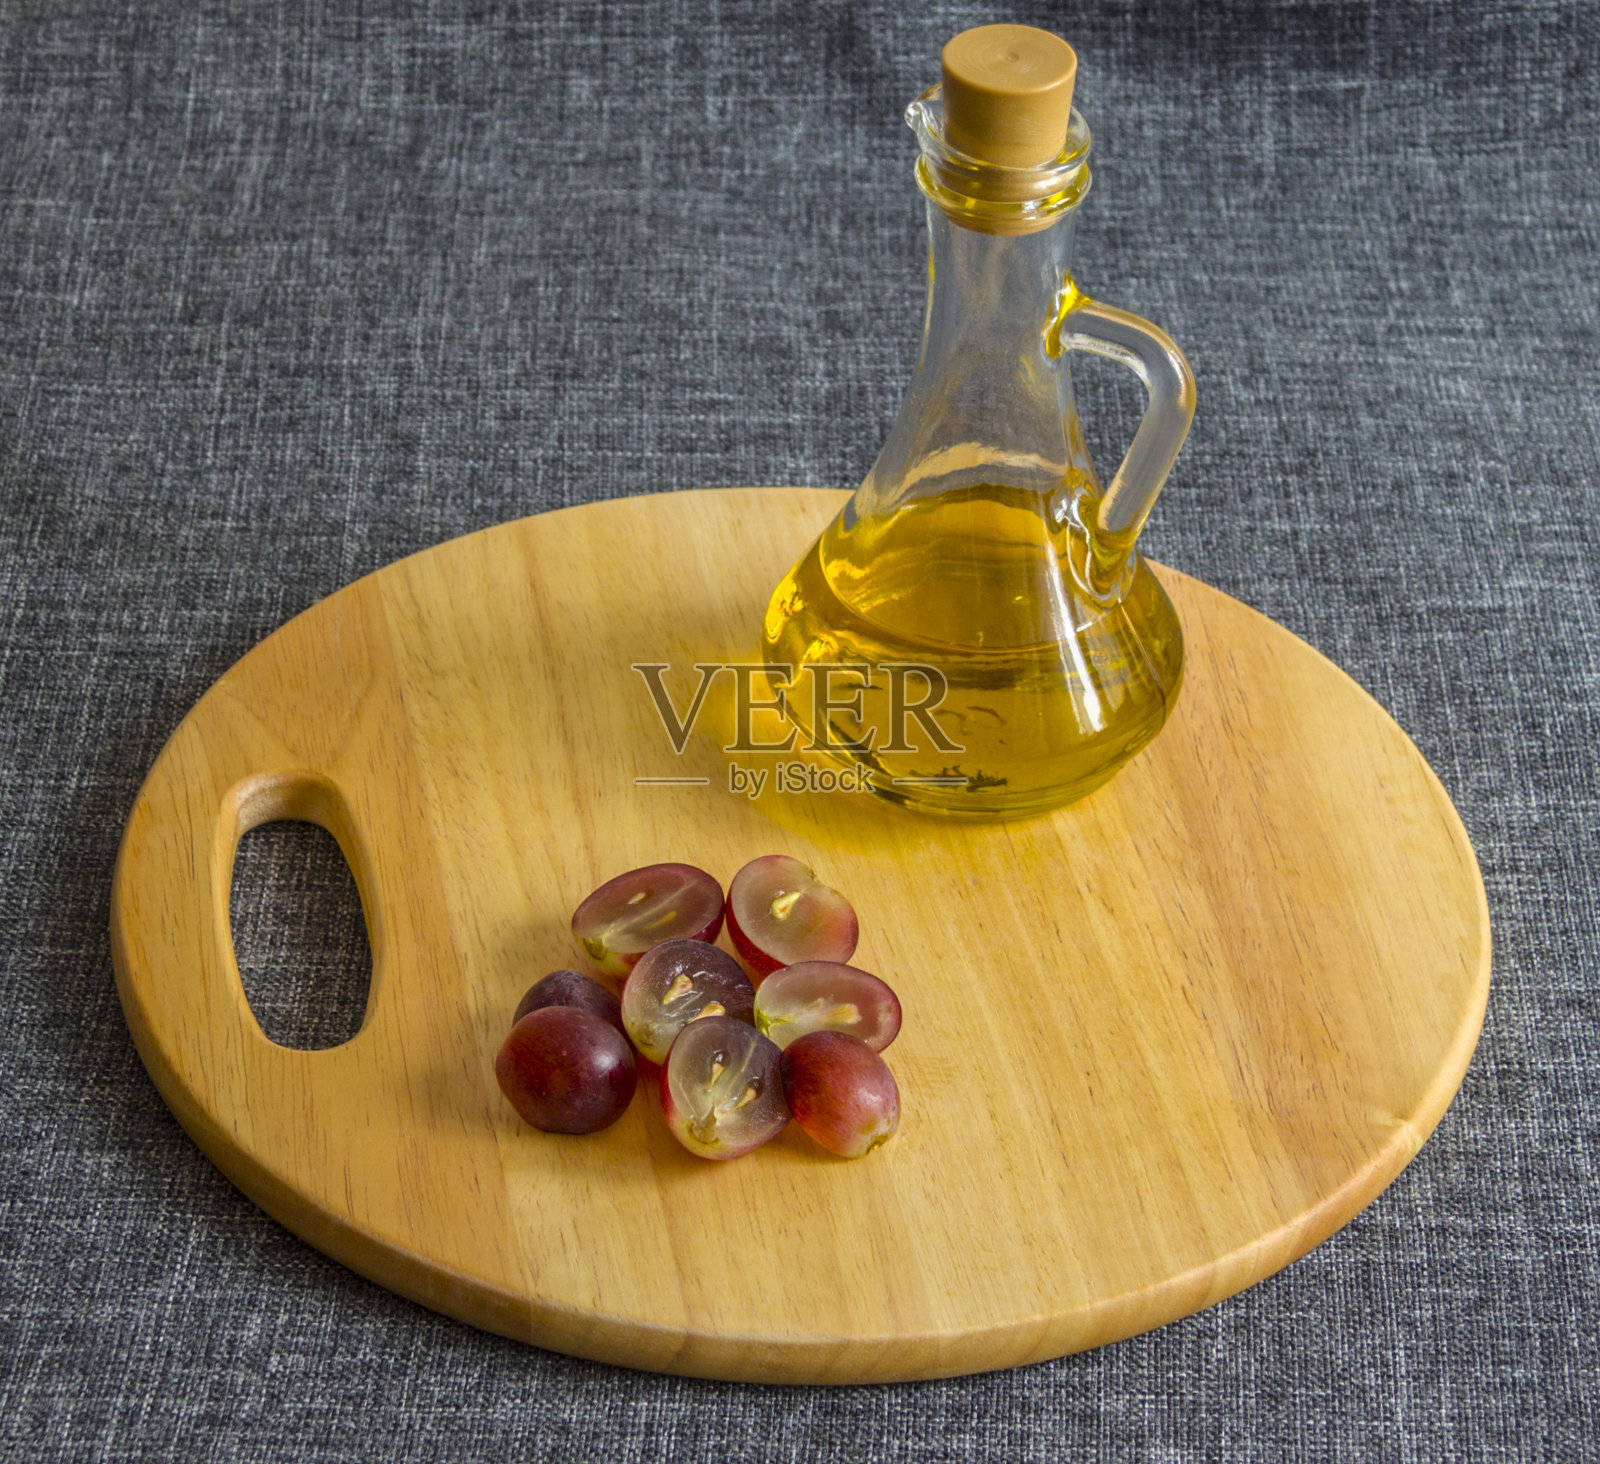 一个小玻璃罐里放着油和碎葡萄。在一块木头砧板上照片摄影图片